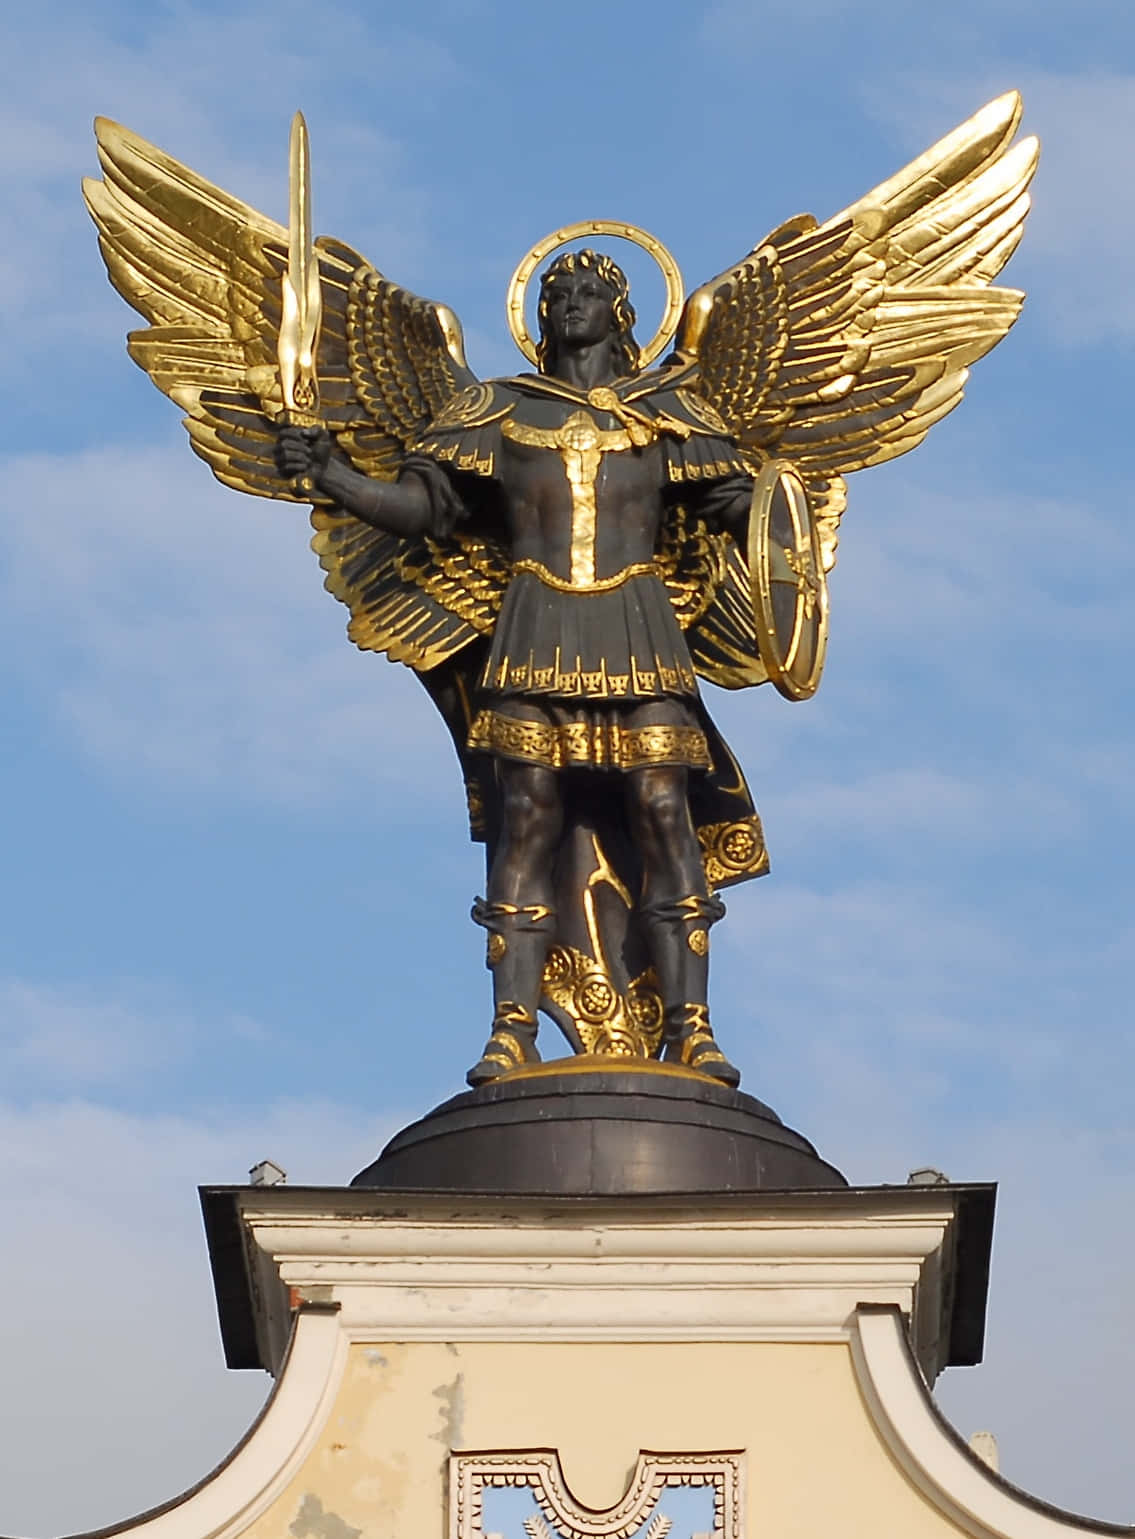 Saint Michael, the Archangel